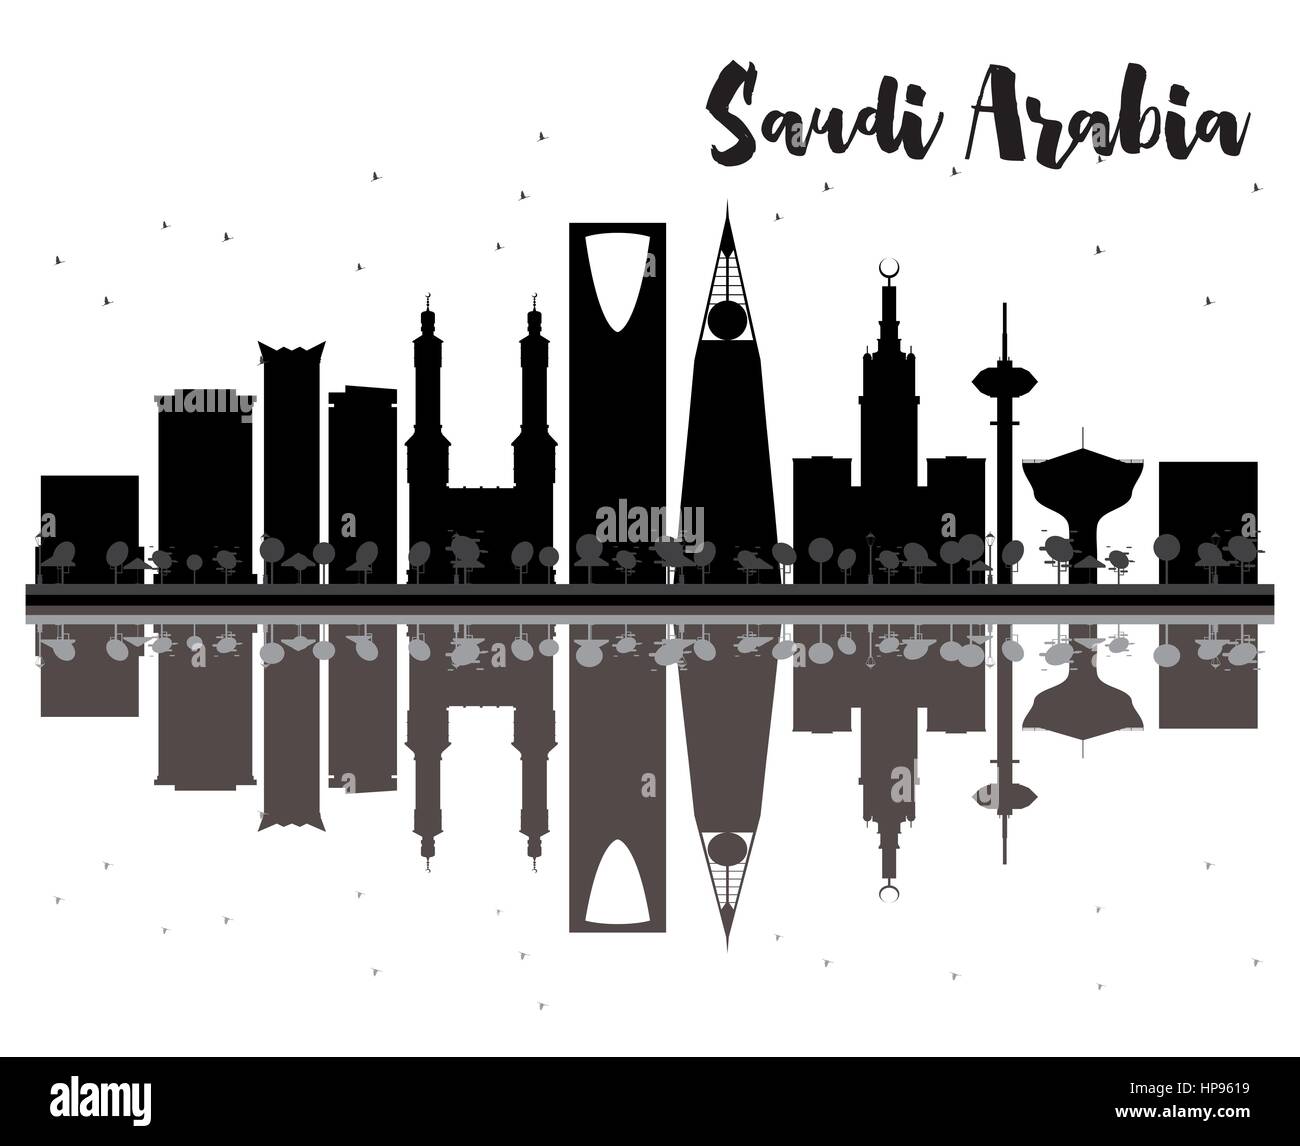 Saudi-arabien Skyline schwarze und weiße Silhouette mit Reflexionen. Vector Illustration. einfache flache Konzept für Tourismus Präsentation, Banner, Plakat Stock Vektor